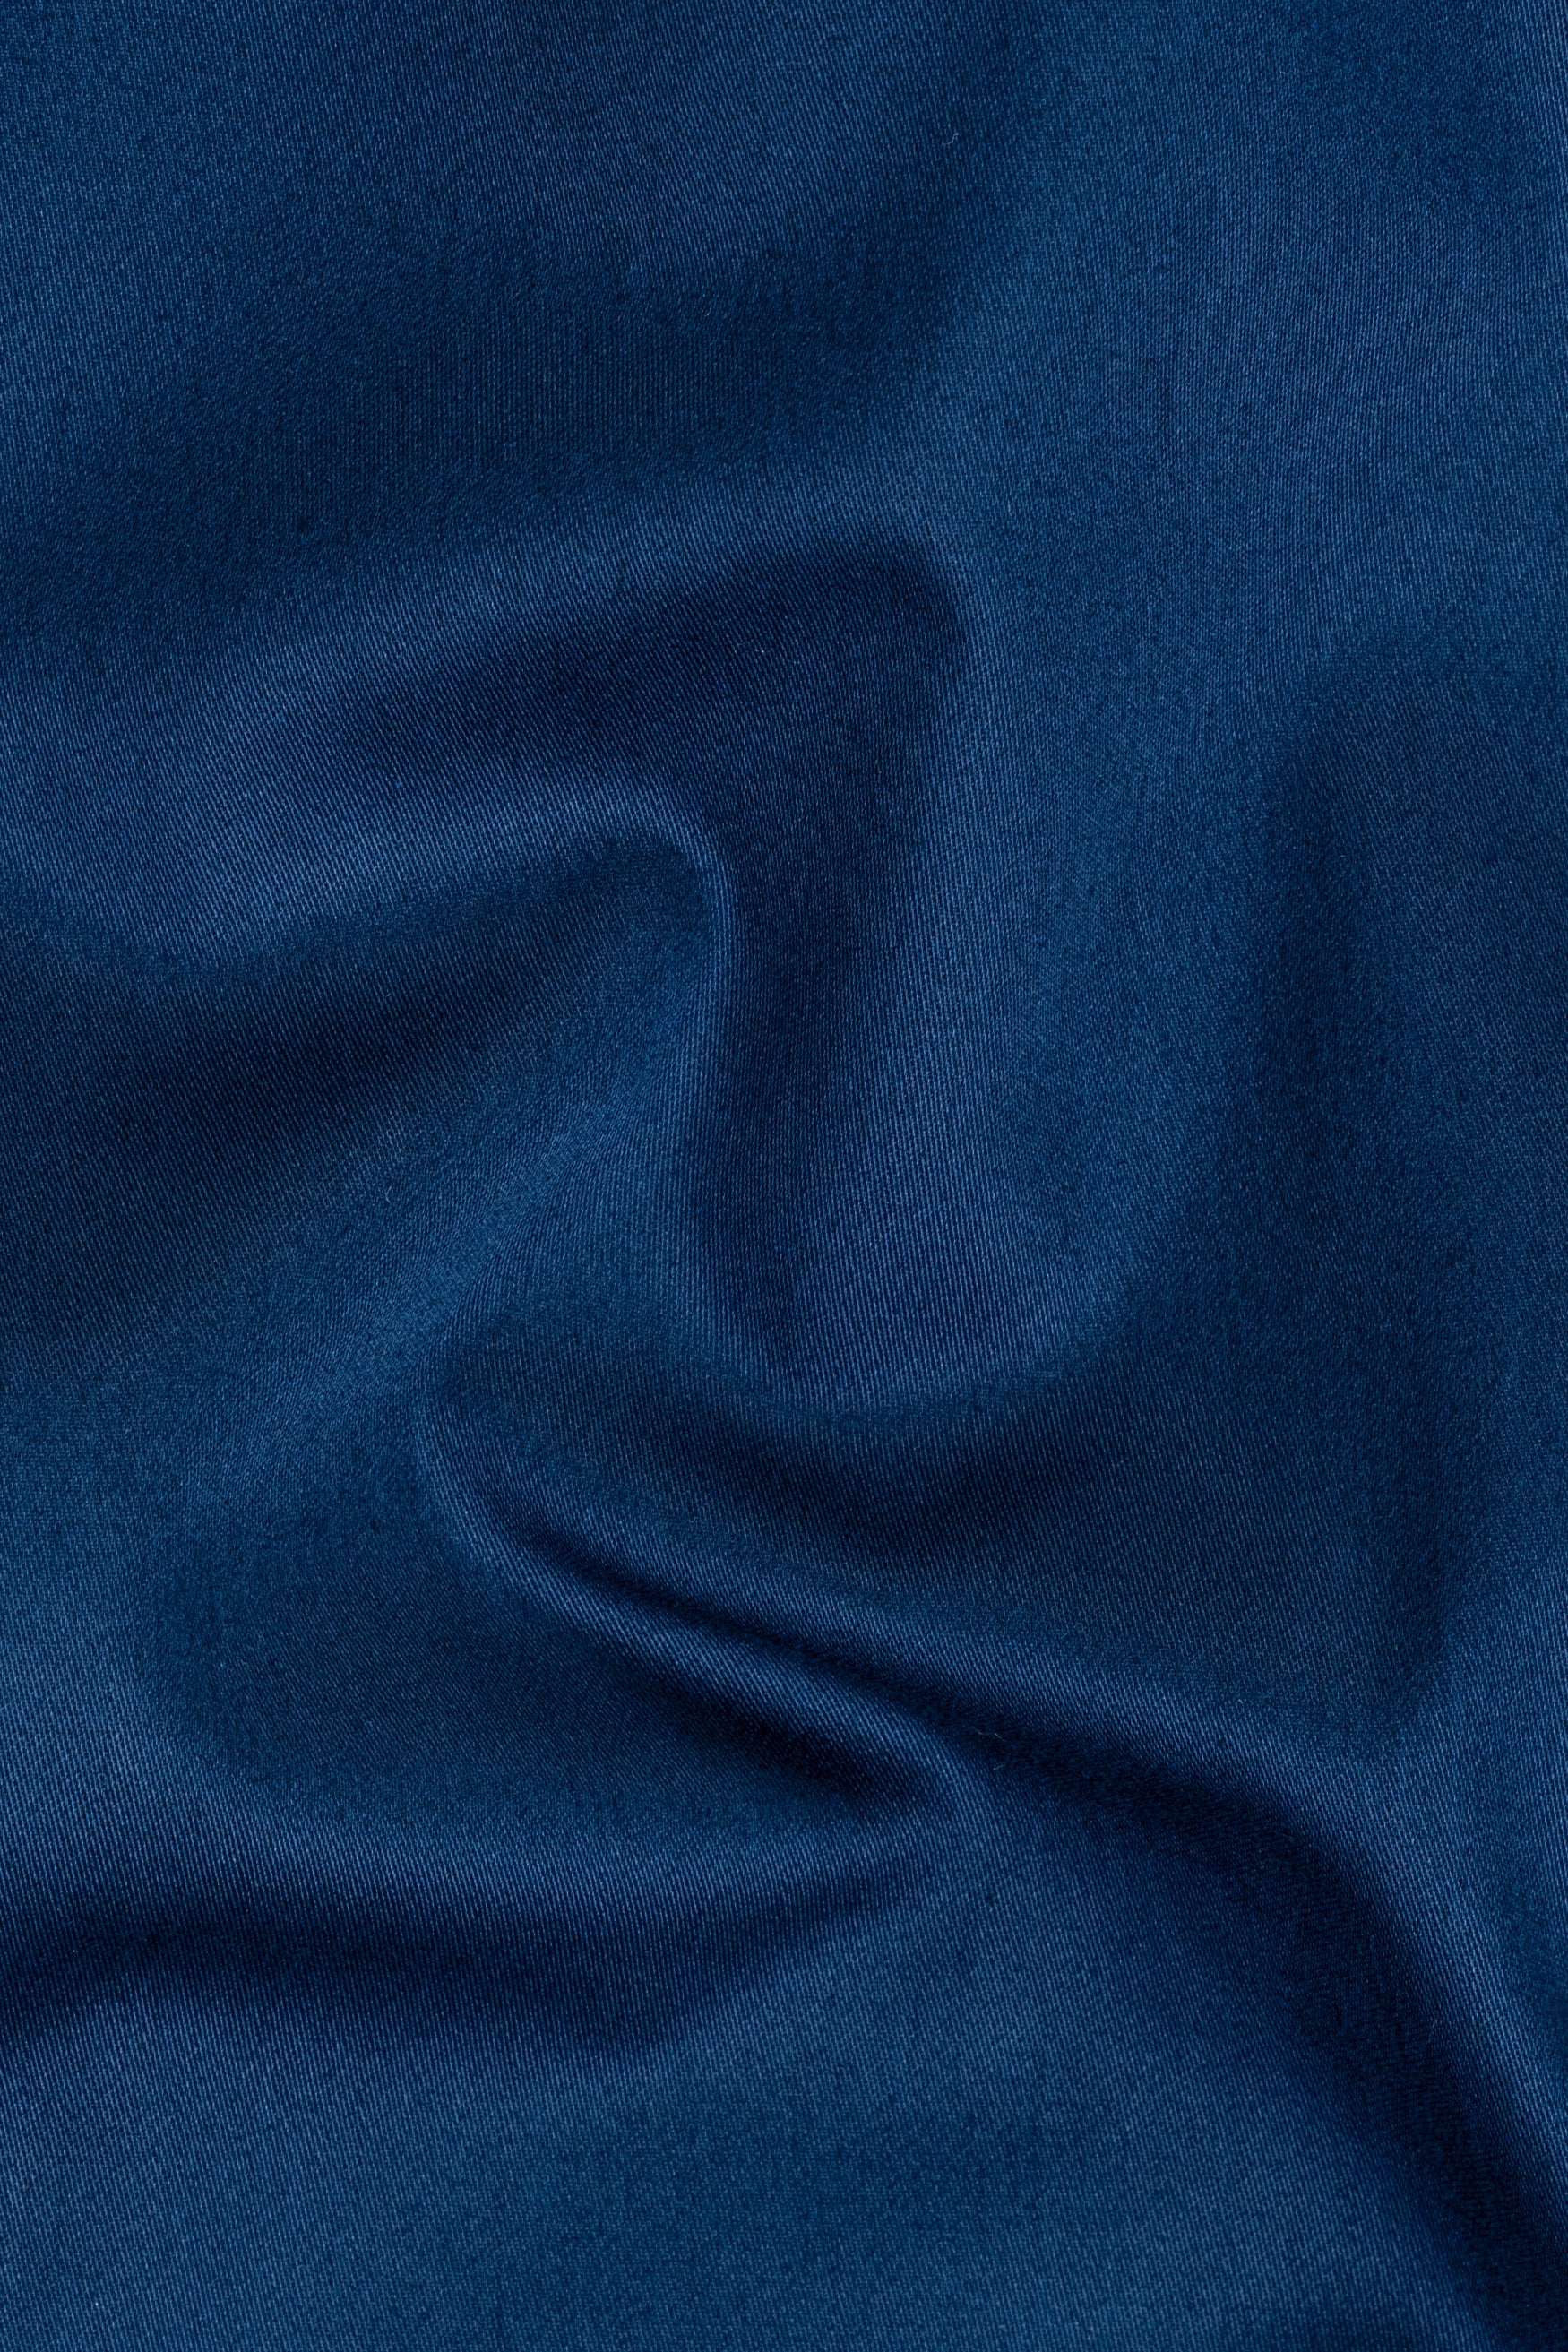 Midnight Blue Subtle Sheen Super Soft Premium Cotton Designer Shirt 12212-NP-BLE-P782-38, 12212-NP-BLE-P782-H-38, 12212-NP-BLE-P782-39, 12212-NP-BLE-P782-H-39, 12212-NP-BLE-P782-40, 12212-NP-BLE-P782-H-40, 12212-NP-BLE-P782-42, 12212-NP-BLE-P782-H-42, 12212-NP-BLE-P782-44, 12212-NP-BLE-P782-H-44, 12212-NP-BLE-P782-46, 12212-NP-BLE-P782-H-46, 12212-NP-BLE-P782-48, 12212-NP-BLE-P782-H-48, 12212-NP-BLE-P782-50, 12212-NP-BLE-P782-H-50, 12212-NP-BLE-P782-52, 12212-NP-BLE-P782-H-52